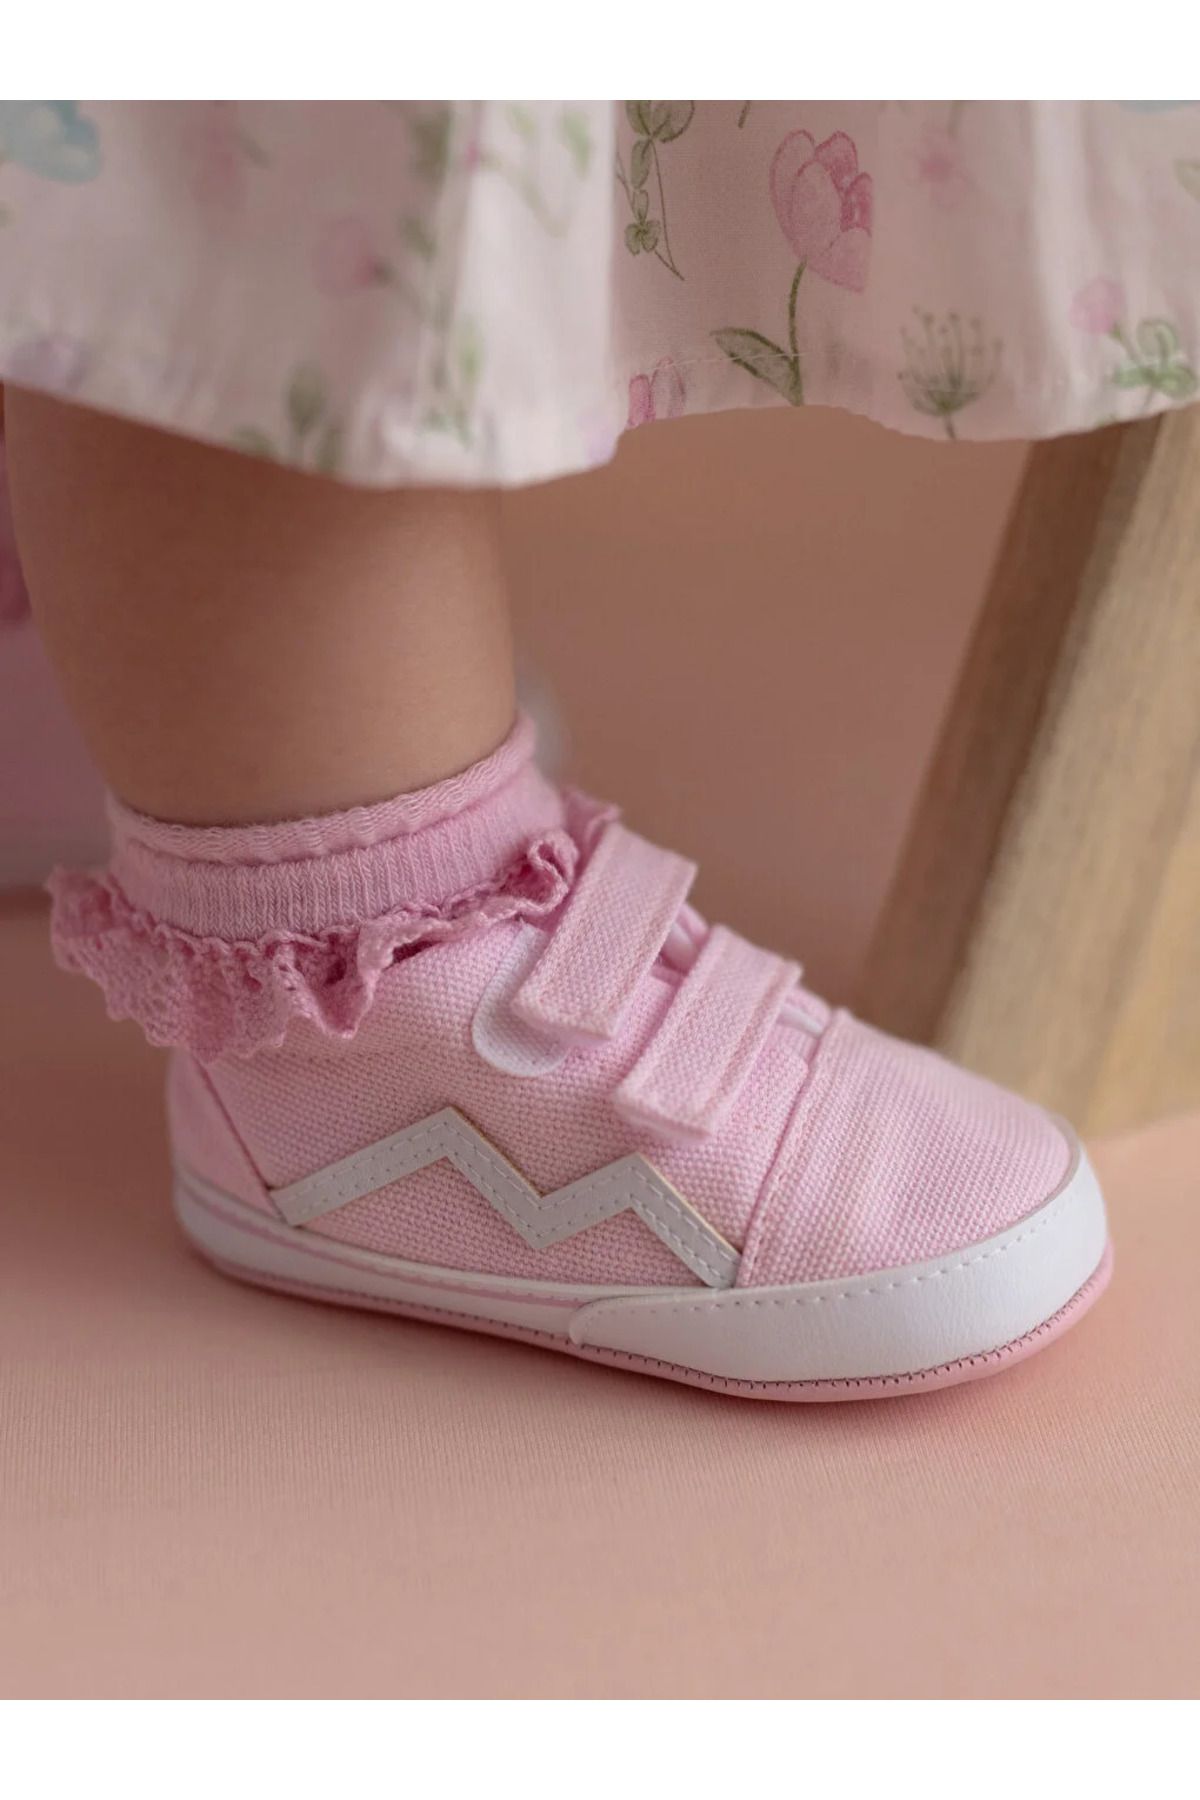 LC Waikiki LCW STEPS Kız Bebek Yürüme Öncesi Spor Ayakkabı